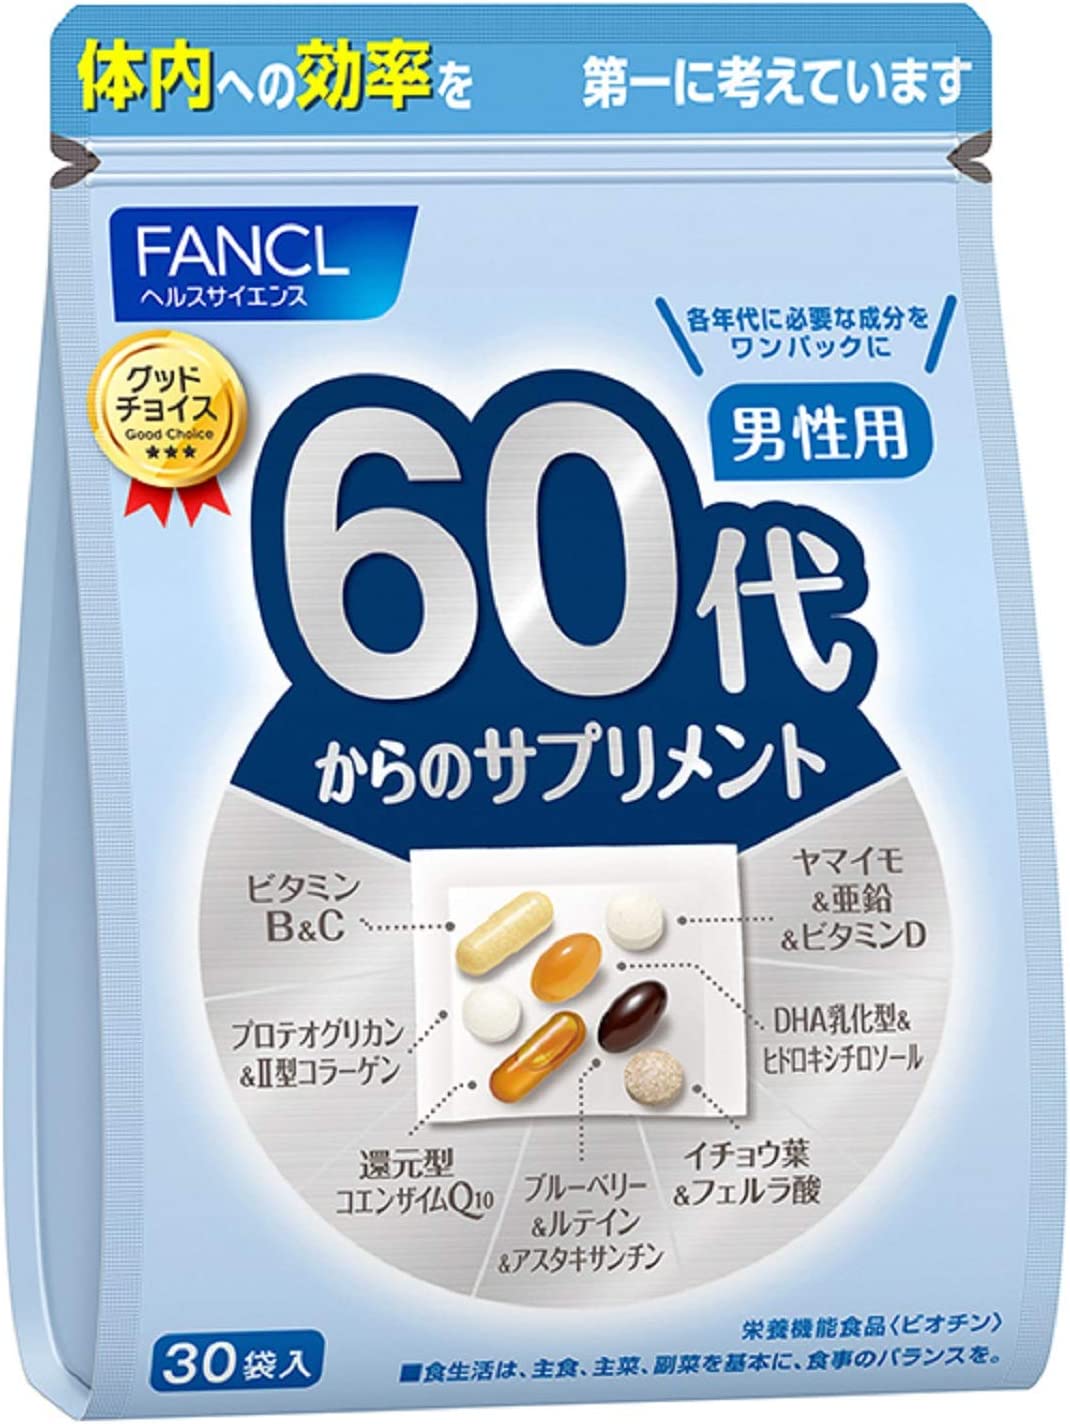 Комплекс витамин FANCL для мужчин старше 60 лет витаминный комплекс fancl для молодых мужчин от 20 до 30 лет 3x30 пакетов